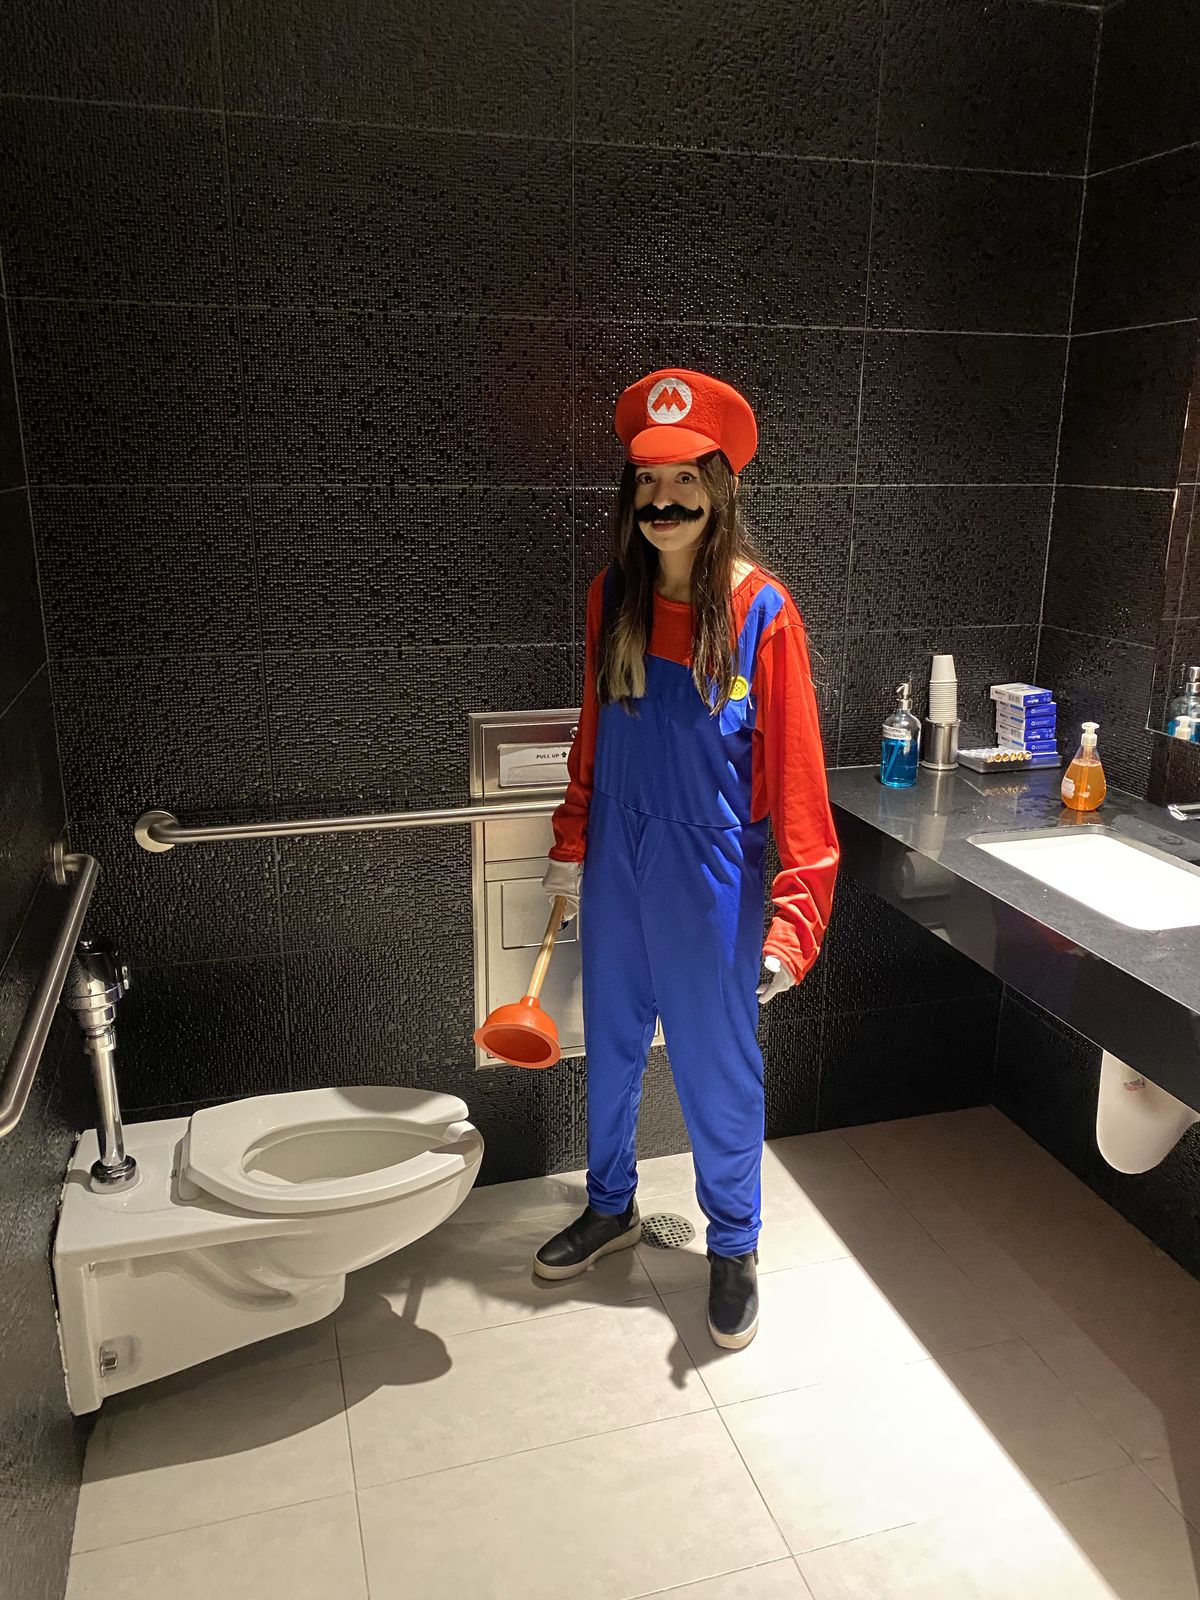 XTINA GG, déguisé en Mario, se tient dans une salle de bain tenant un piston au-dessus des toilettes.